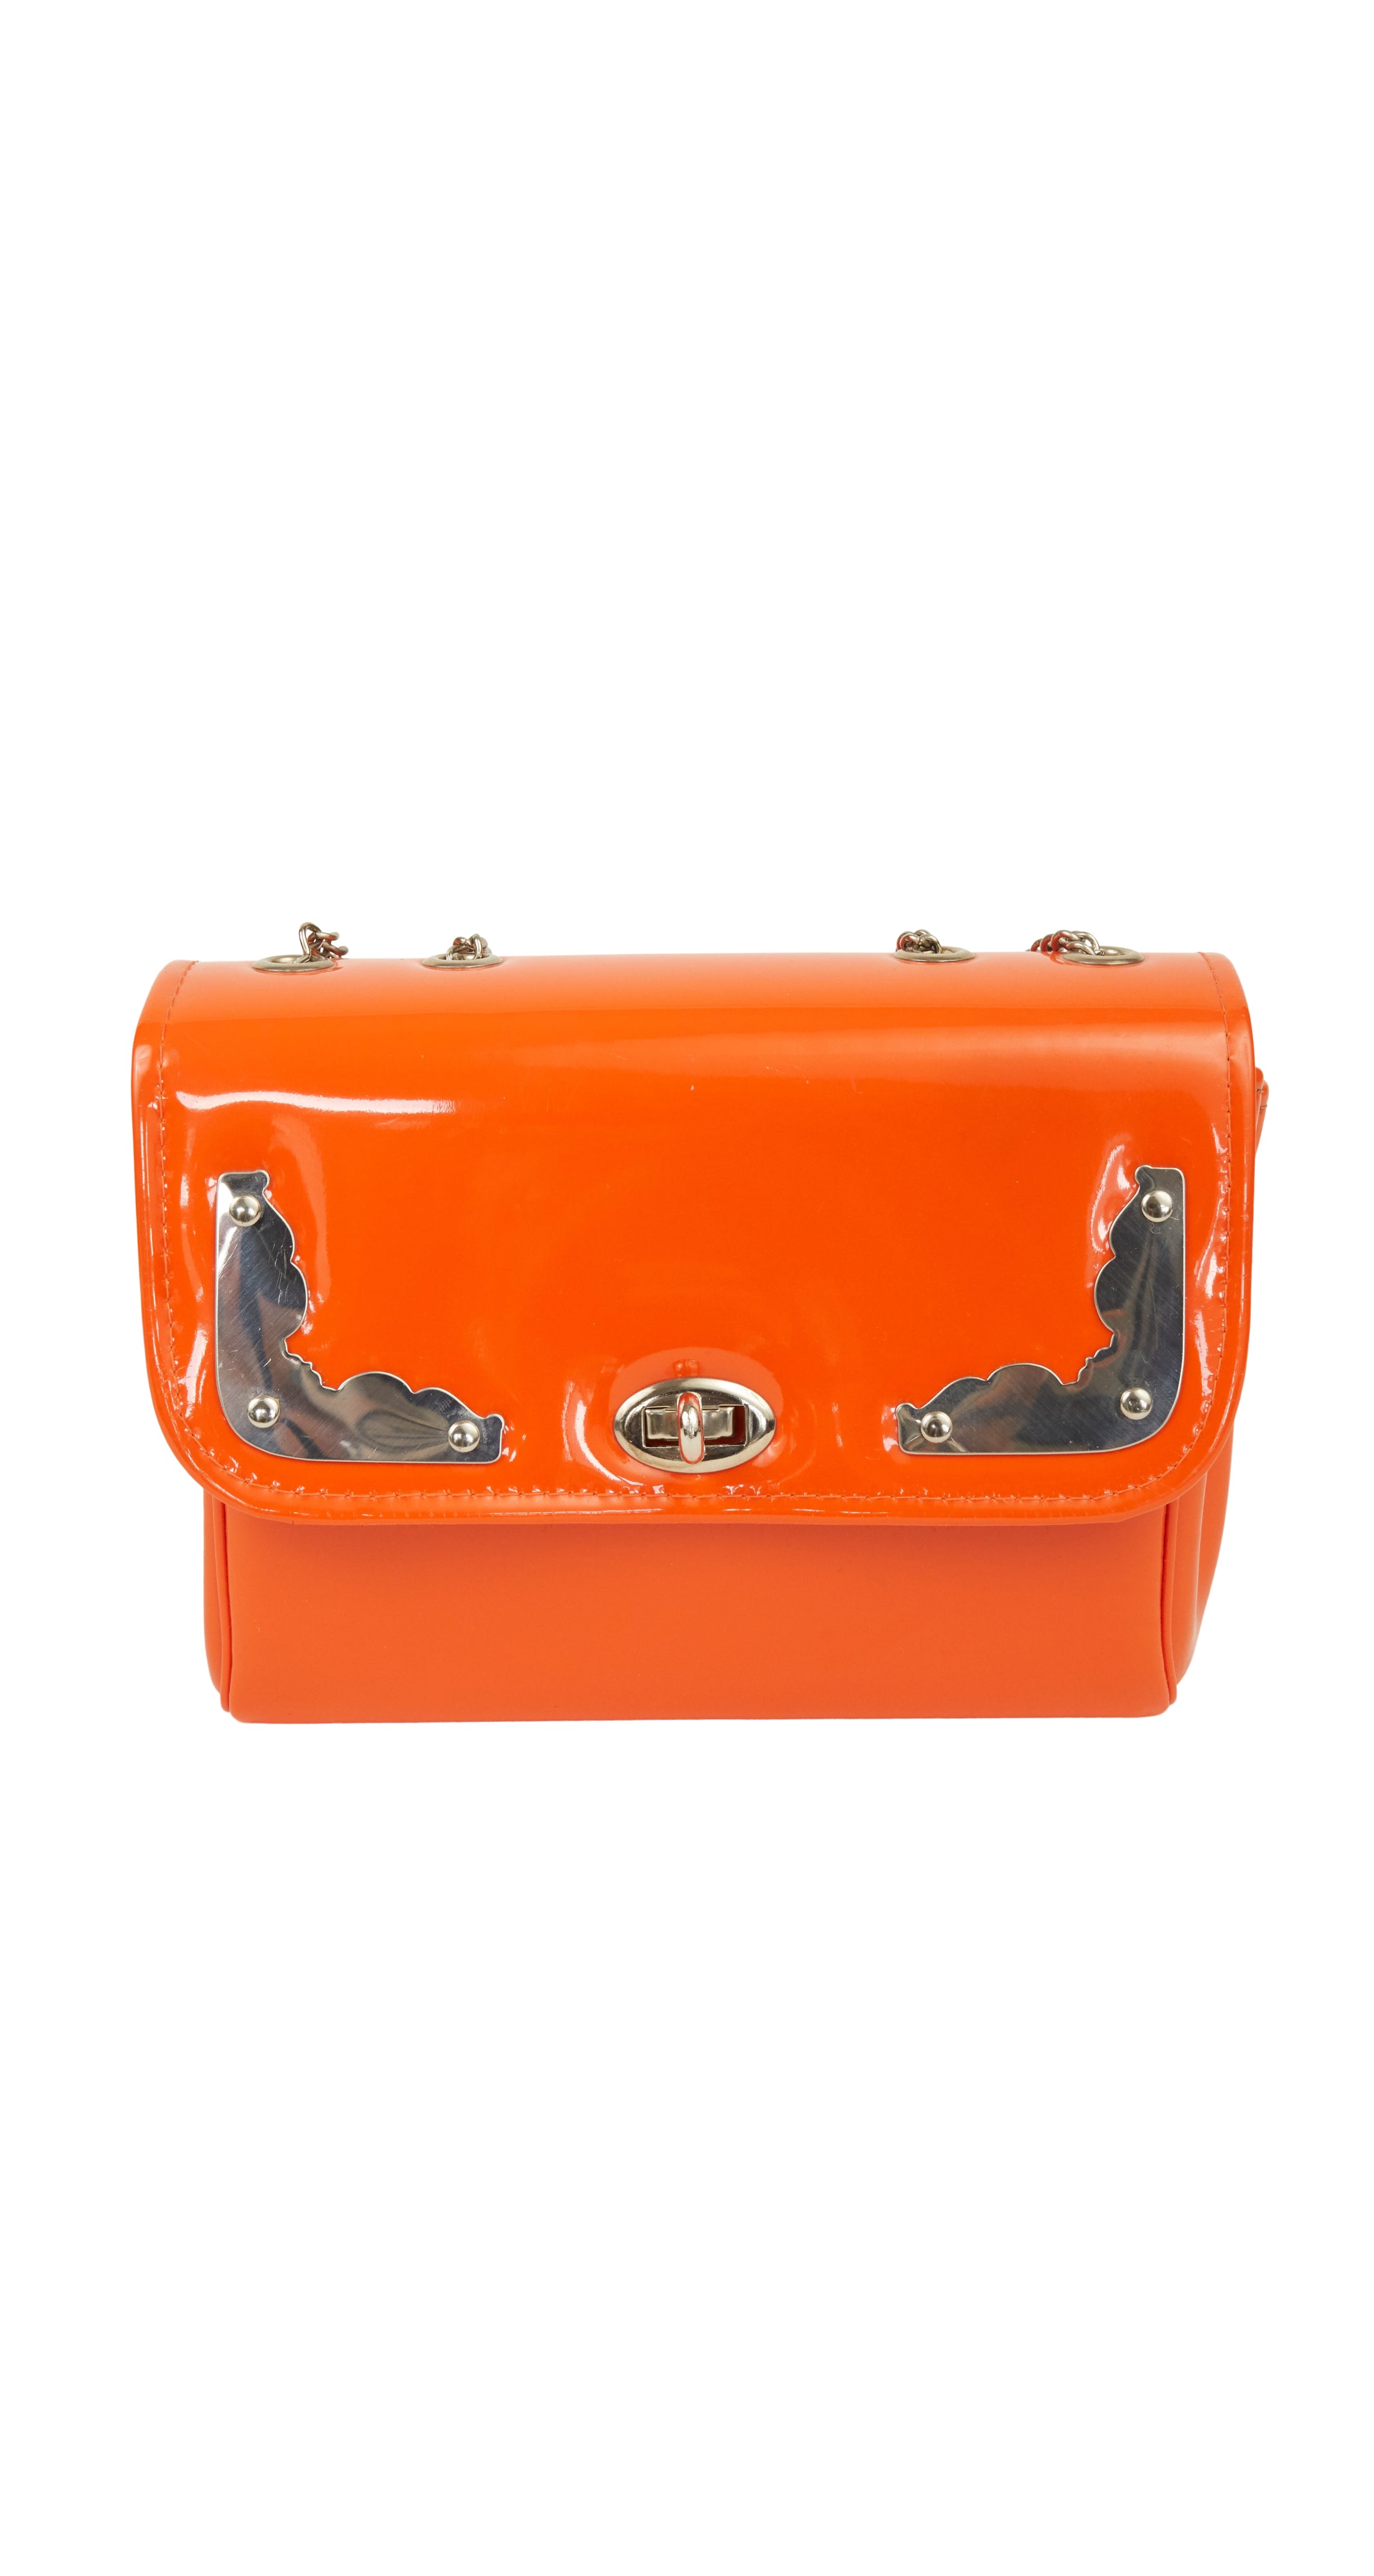 1960s Mod Orange Vinyl & Silver Handbag